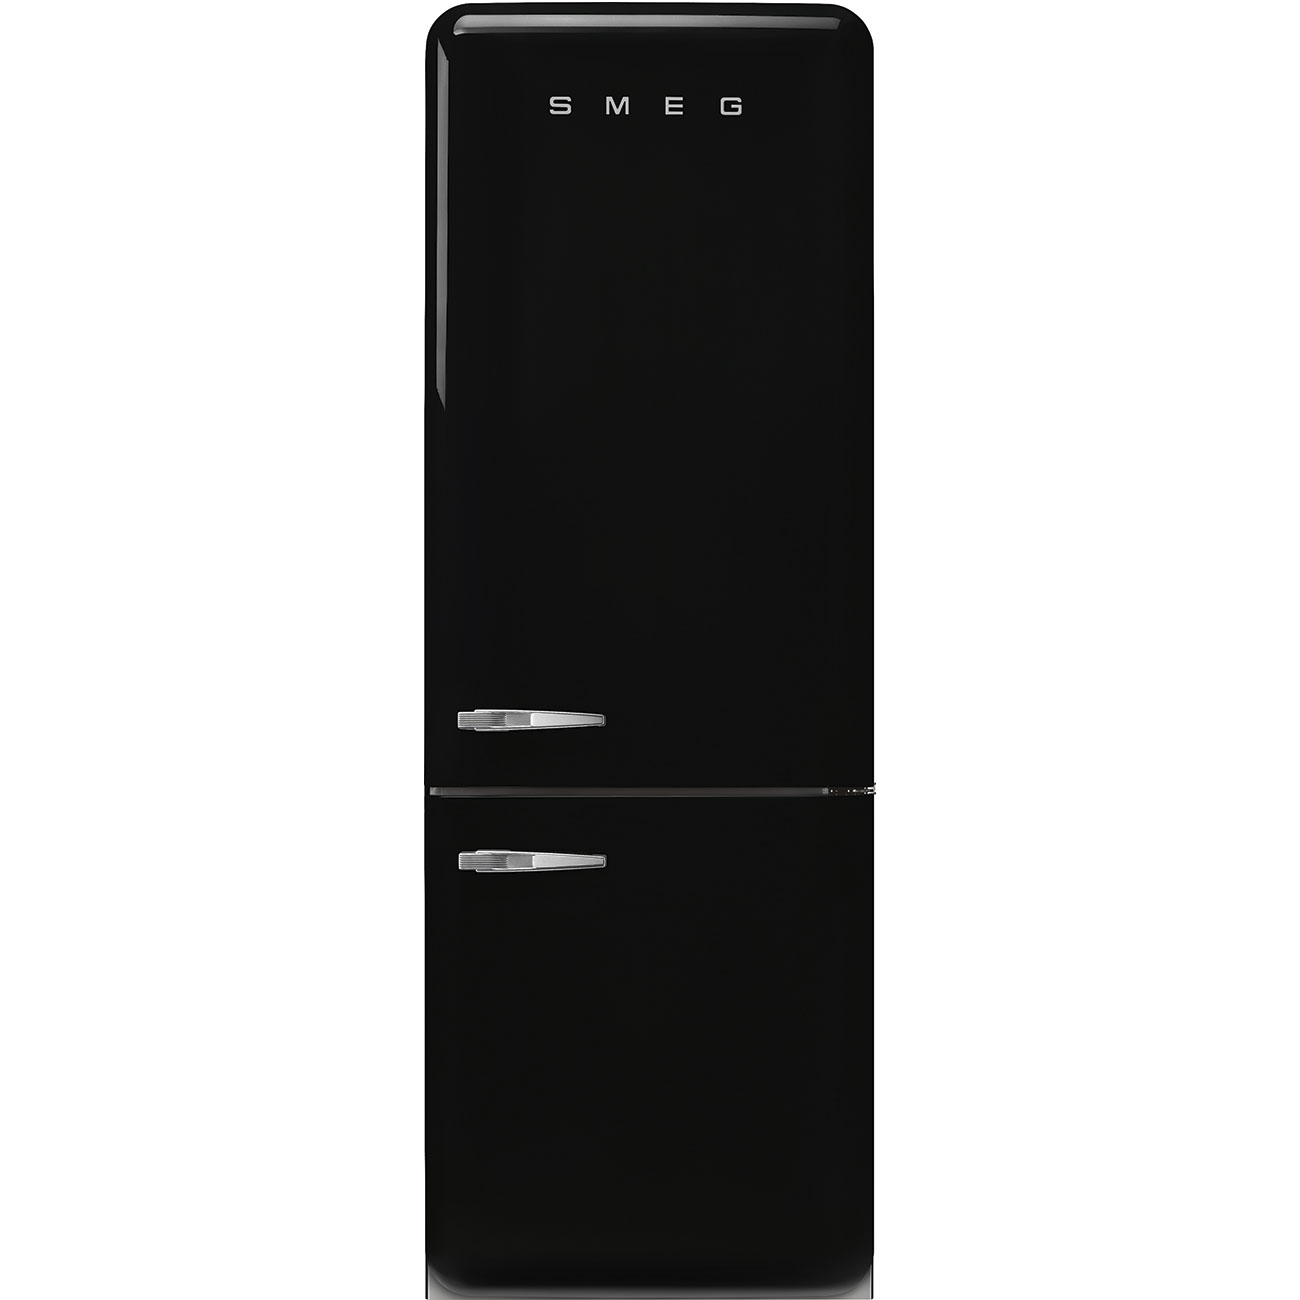 Black refrigerator - Smeg_1